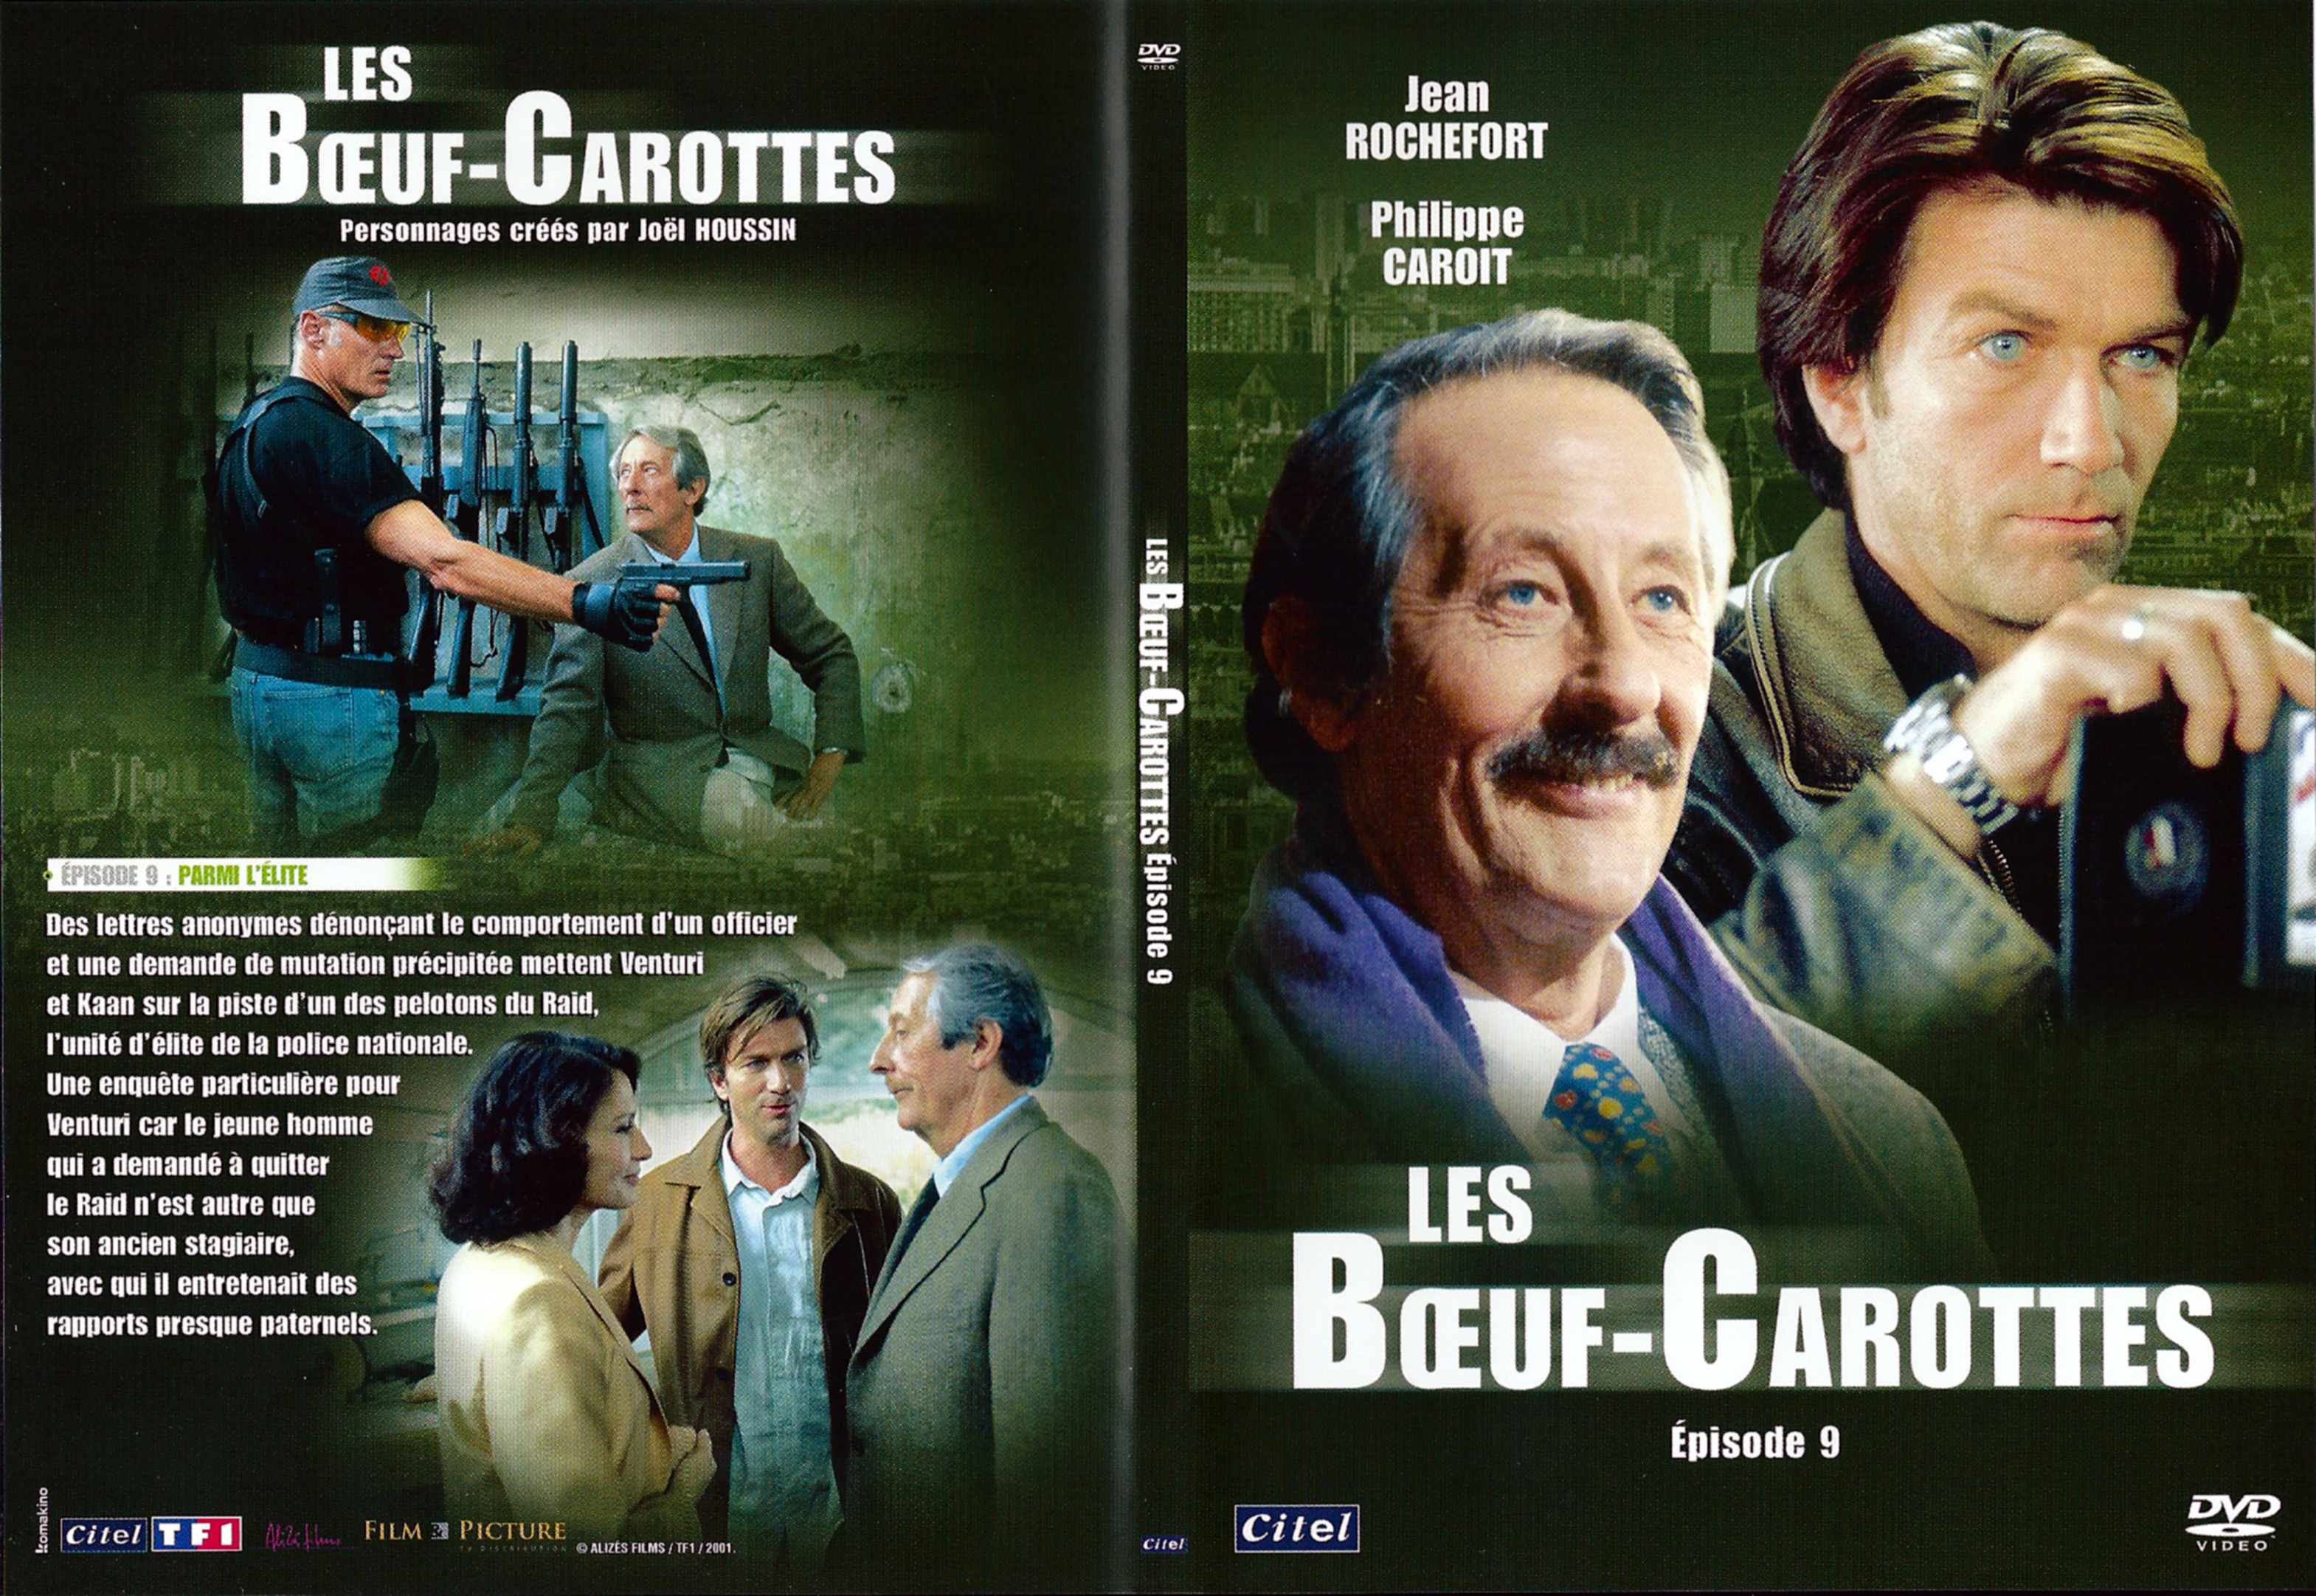 Jaquette DVD Les Boeuf-Carottes DVD 9